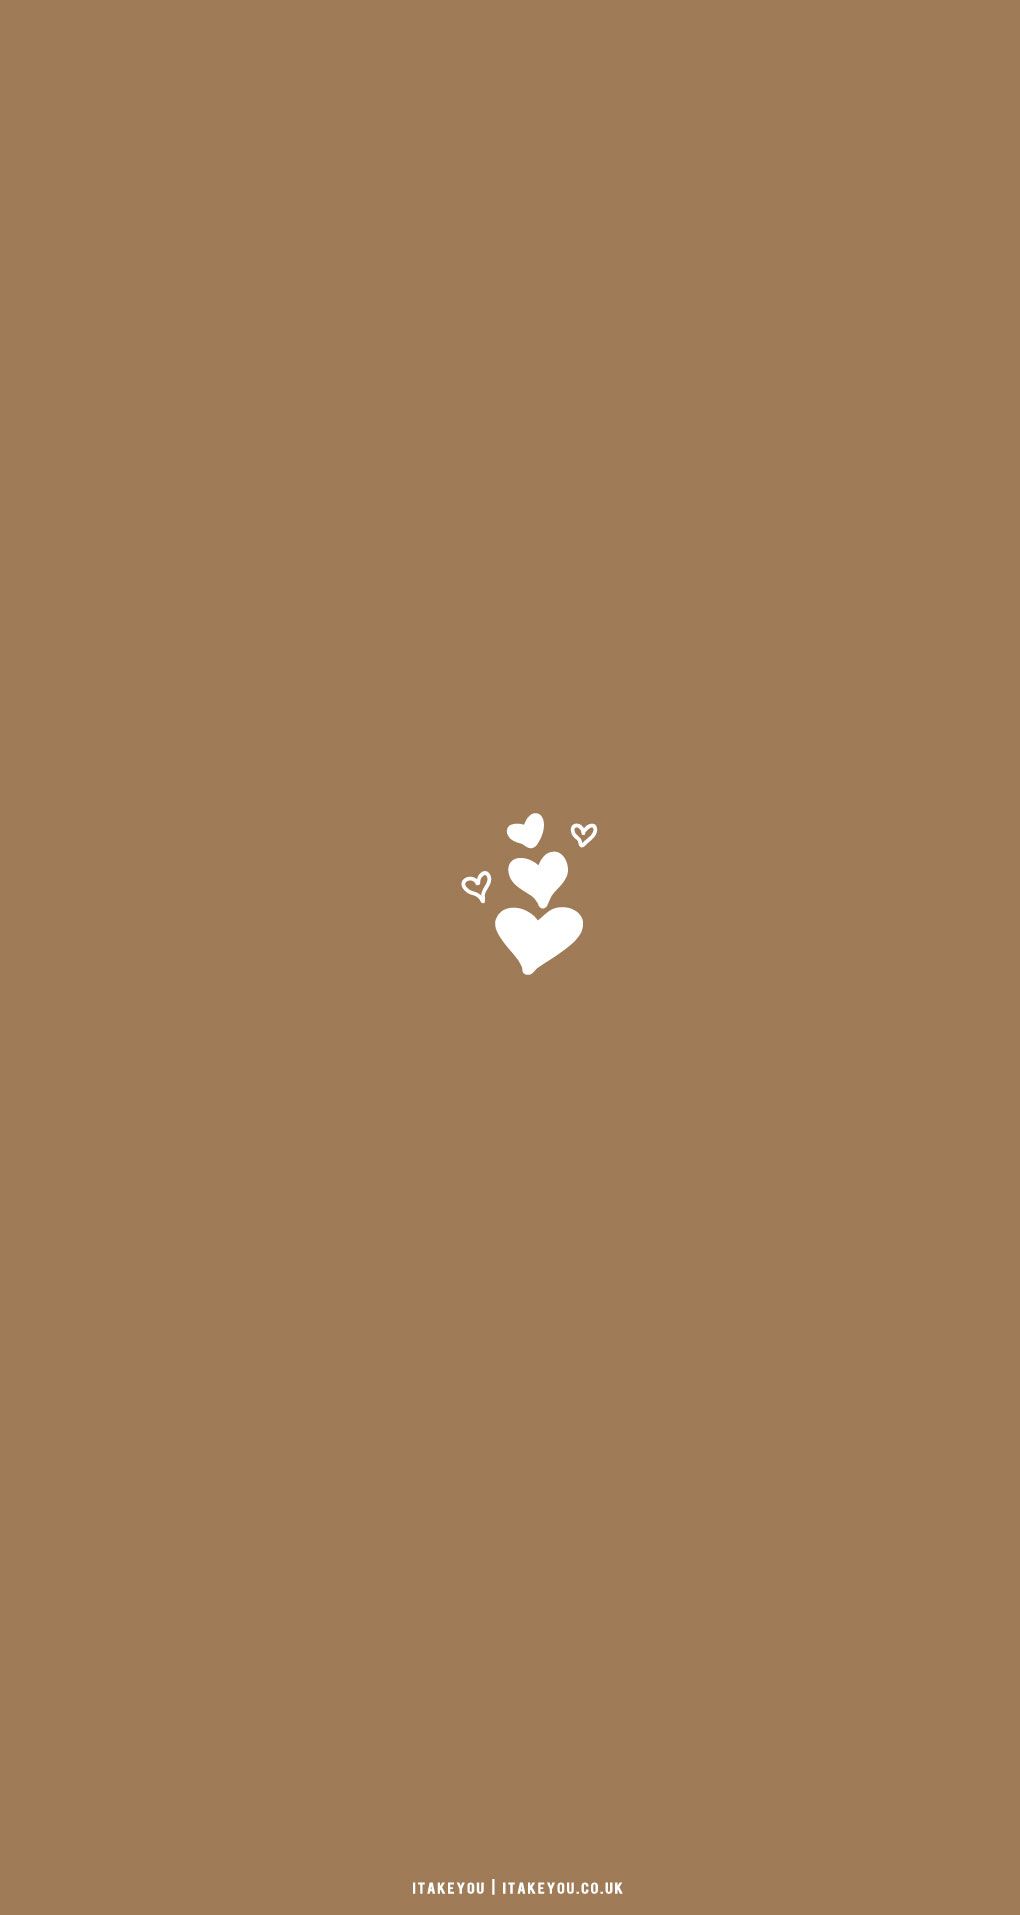  Für Immer Zusammen Hintergrundbild 1020x1915. Cute Brown Aesthetic Wallpaper for Phone : Lots of Love Aesthetic Wallpaper I Take You. Wedding Readings. Wedding Ideas